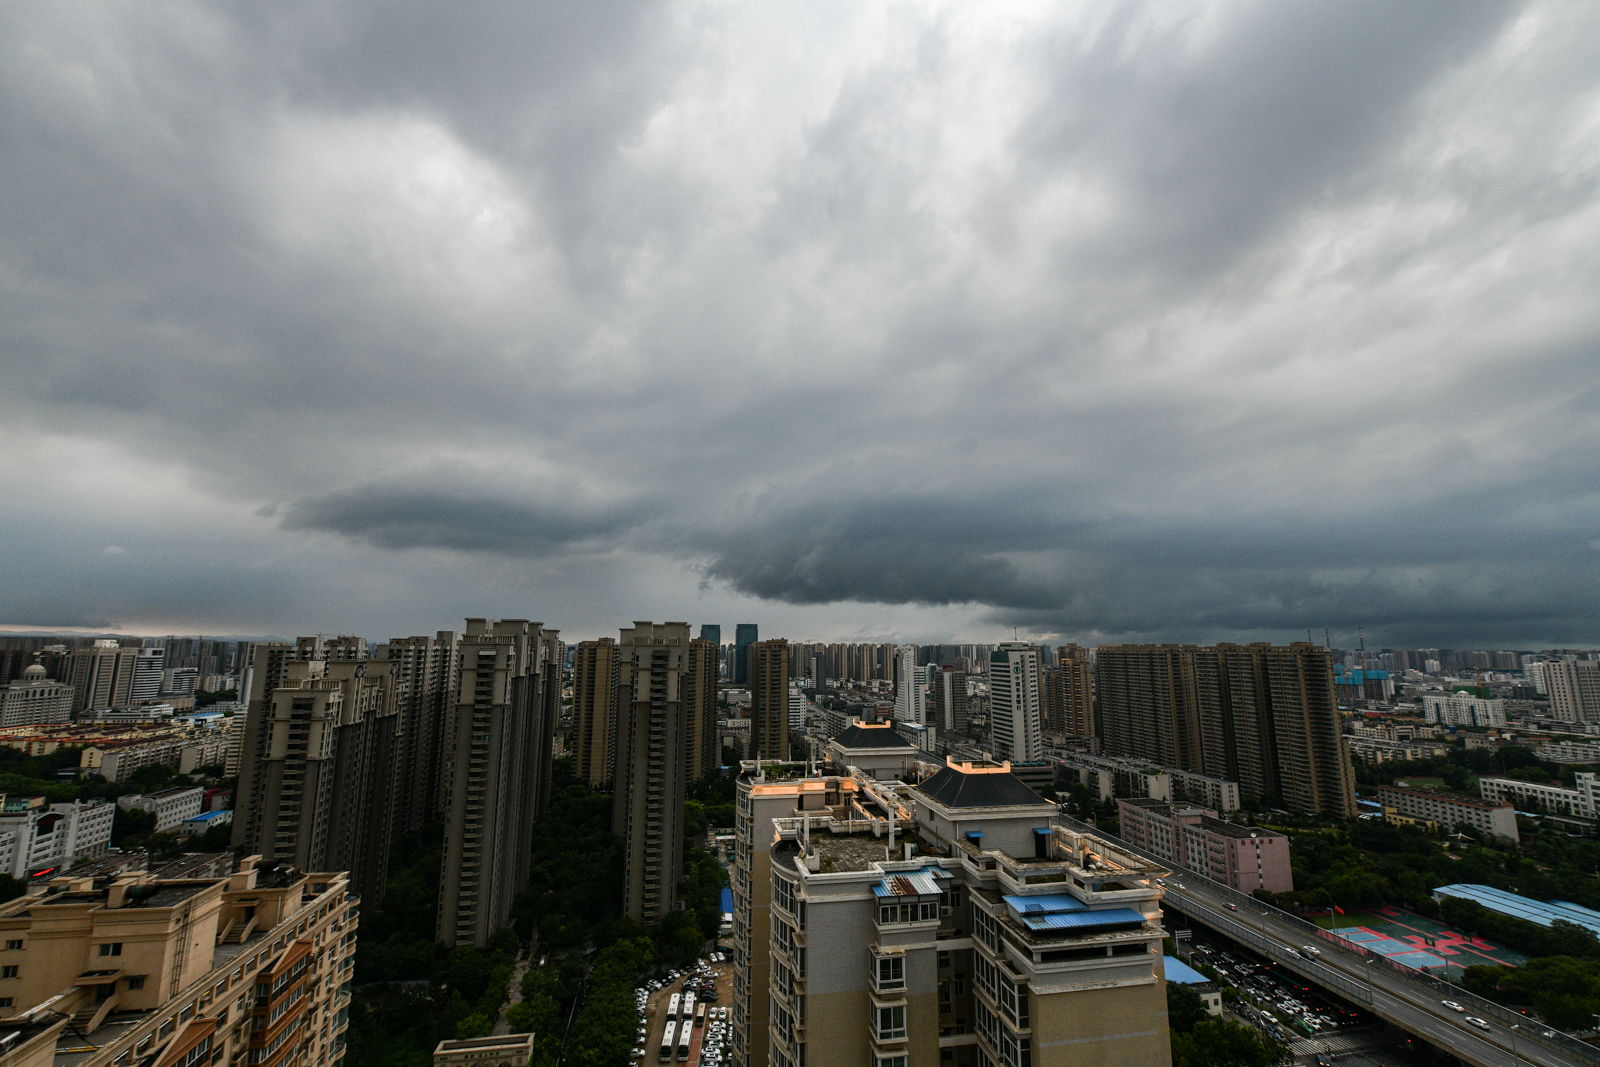 郑州暴雨来袭 白天瞬间成黑夜 郑州城区现罕见“绿色天空”-新闻频道-和讯网